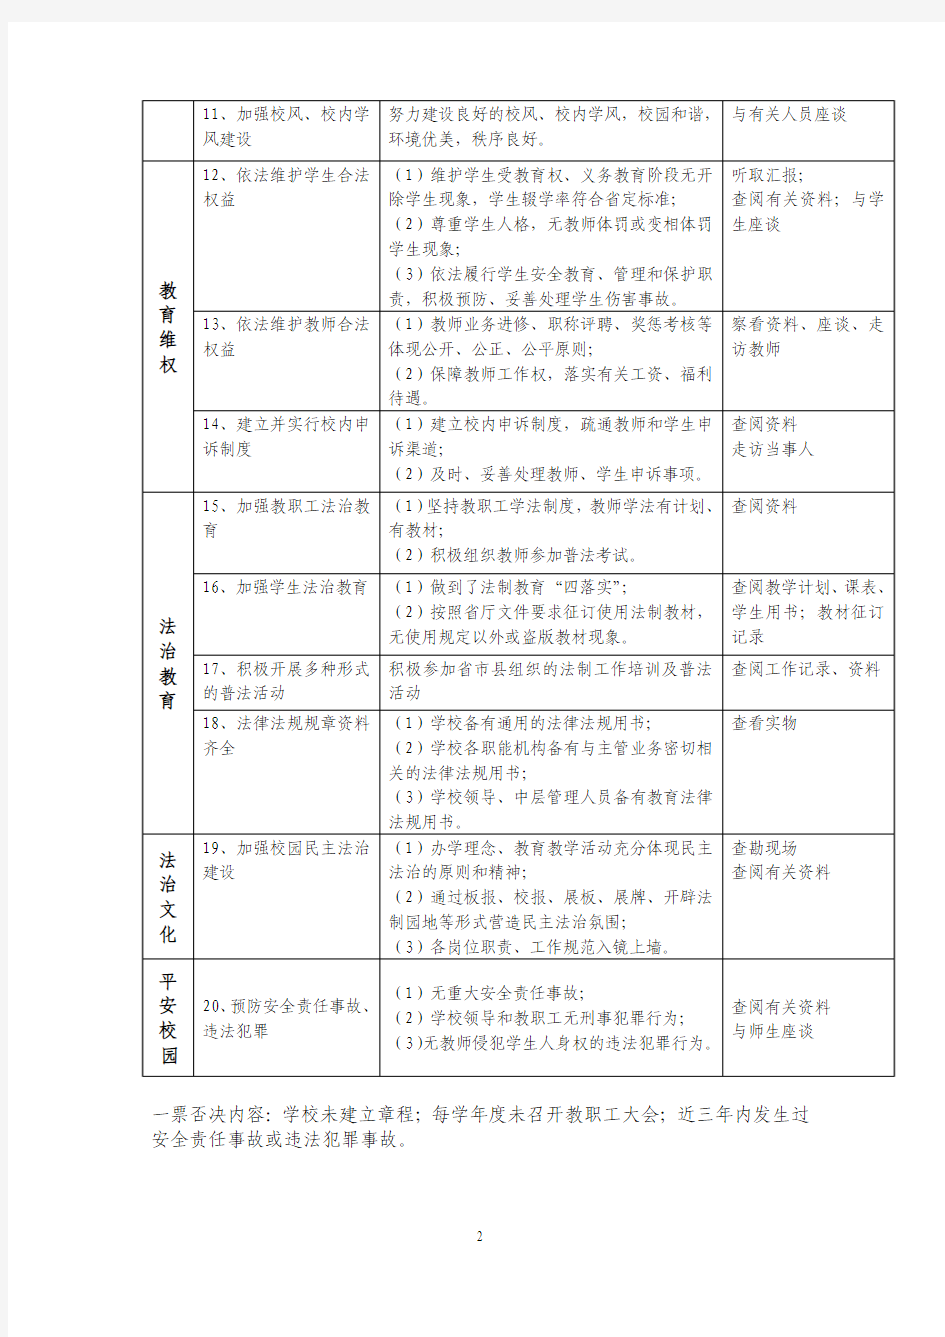 河北省依法治校示范校检查评估标准